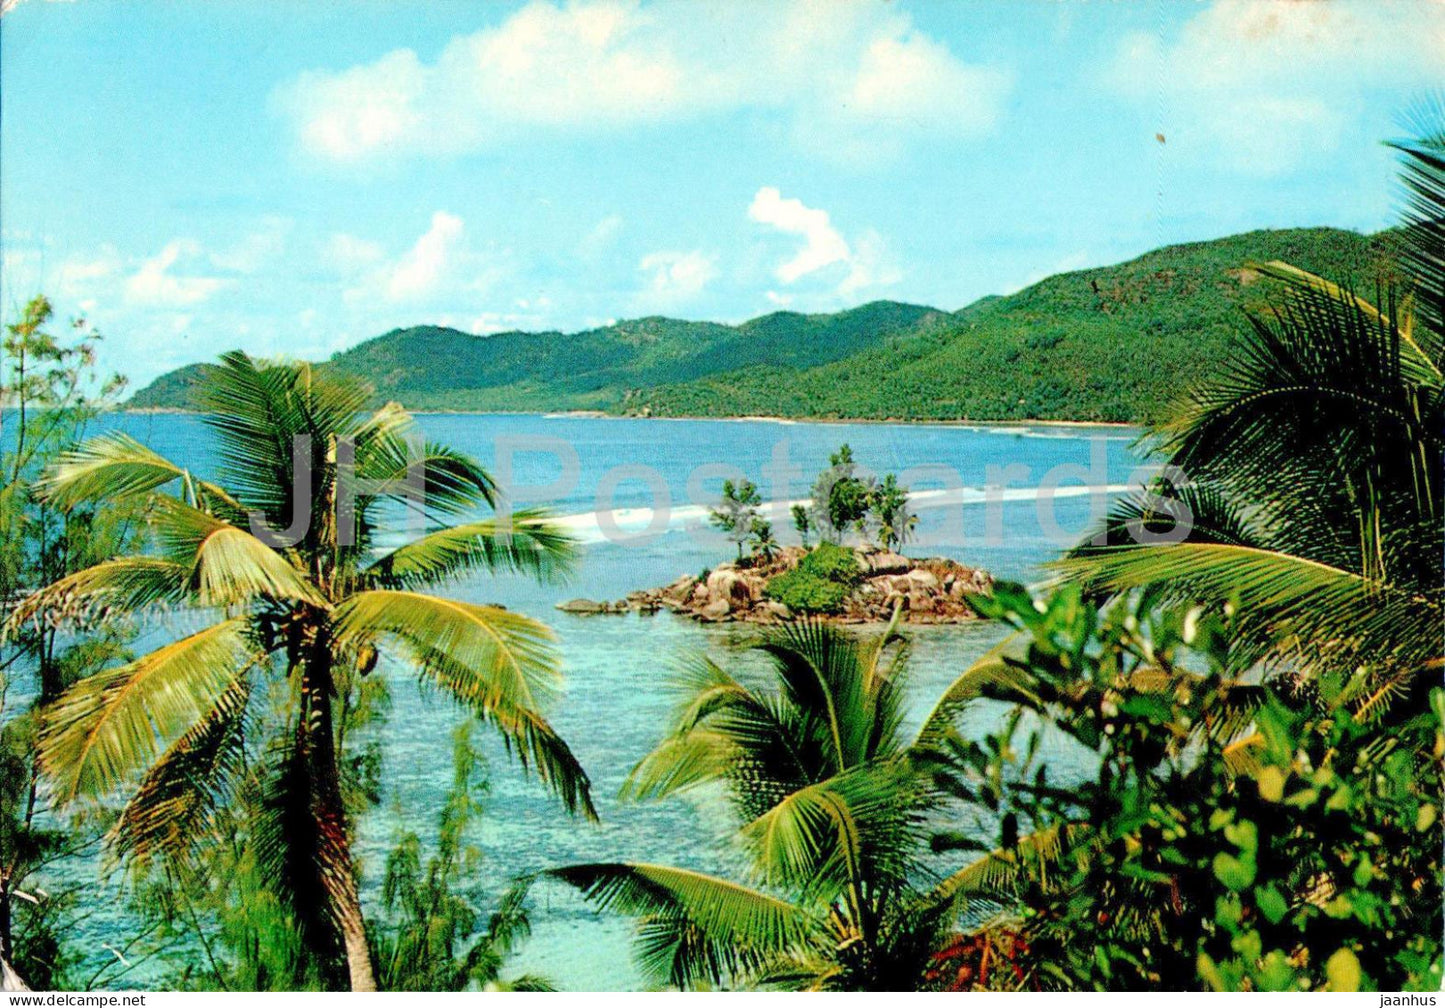 Island of Anse Royale - 30 - 1977 - Seychelles - used